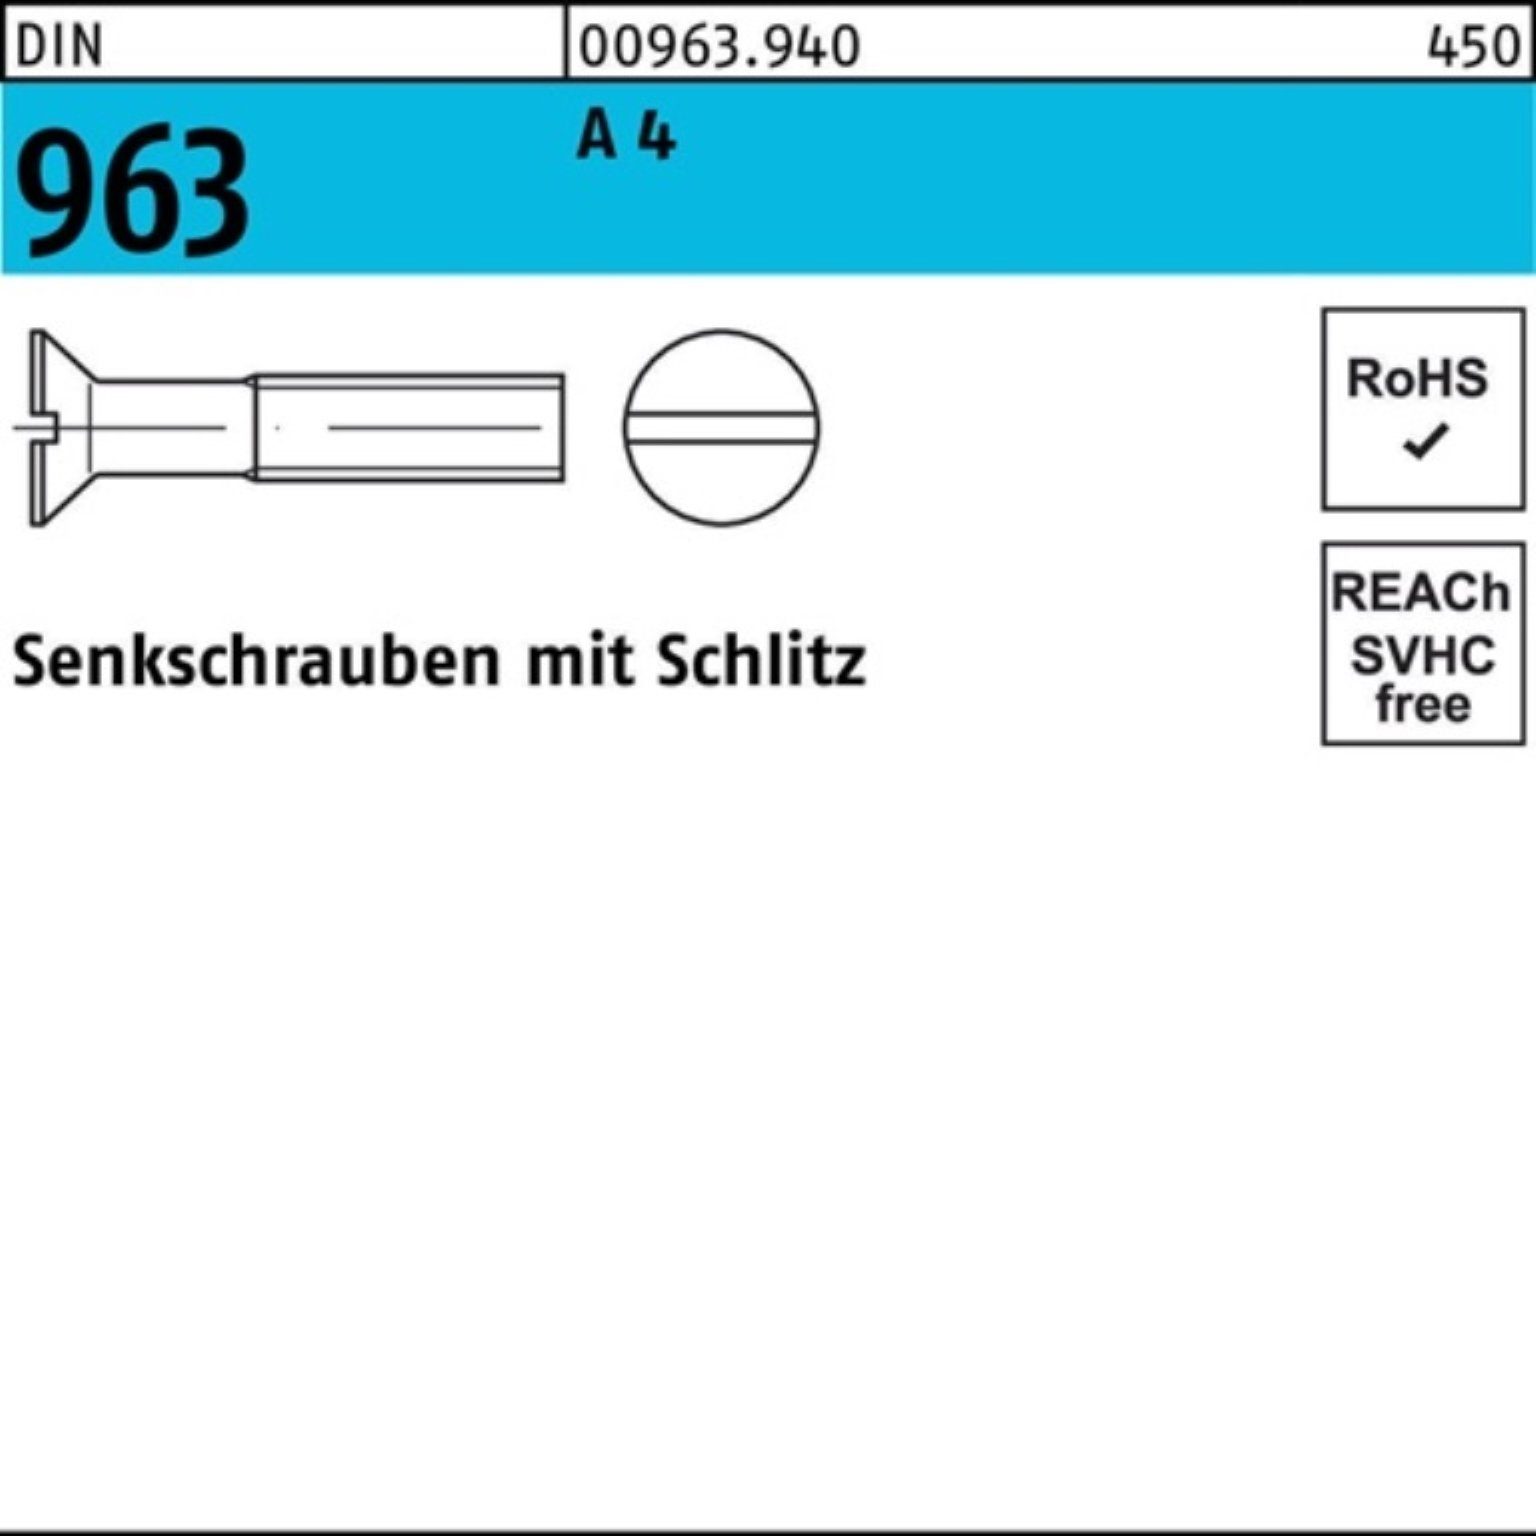 Reyher Senkschraube M8x Senkschraube 4 A 963 A DIN 55 50 Pack Stück 100er DIN Schlitz 963